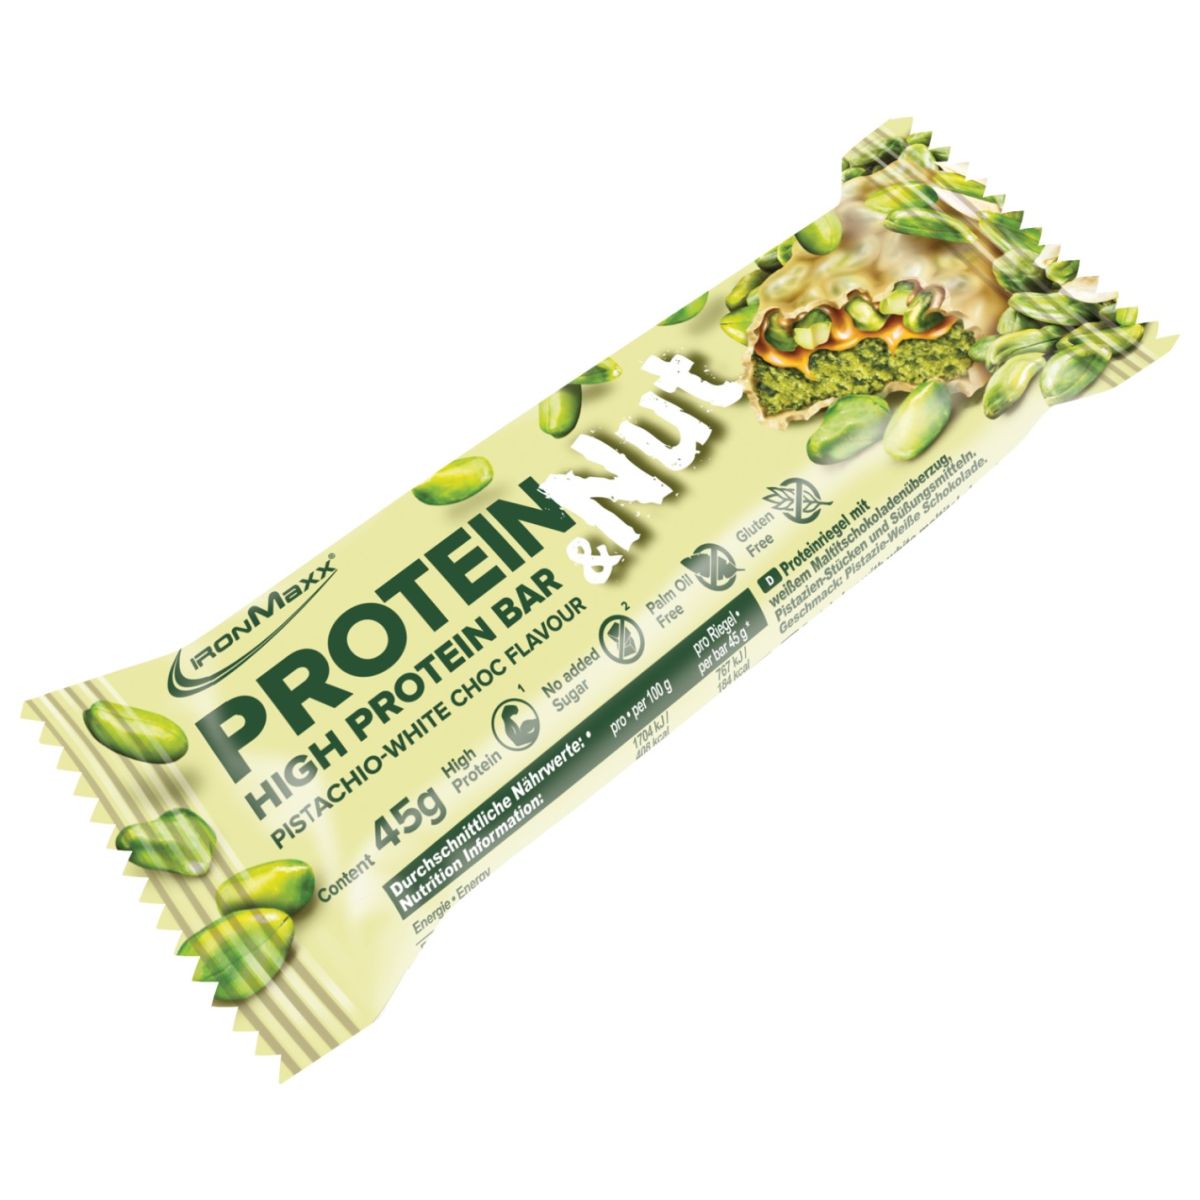 Protein & Nut (45g)